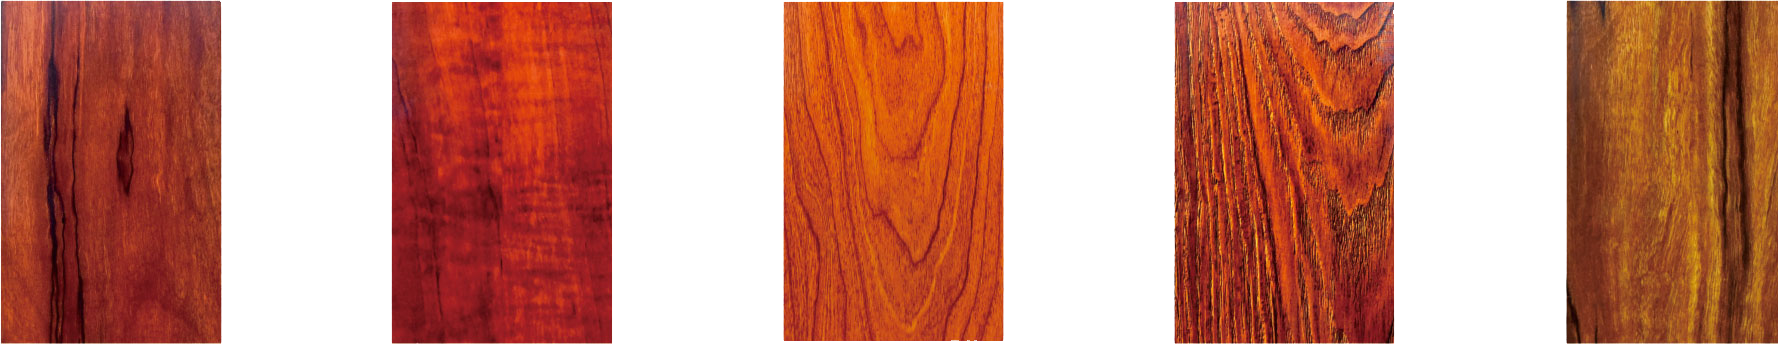 Lacquer electrophoresis wood grain series (indoor)